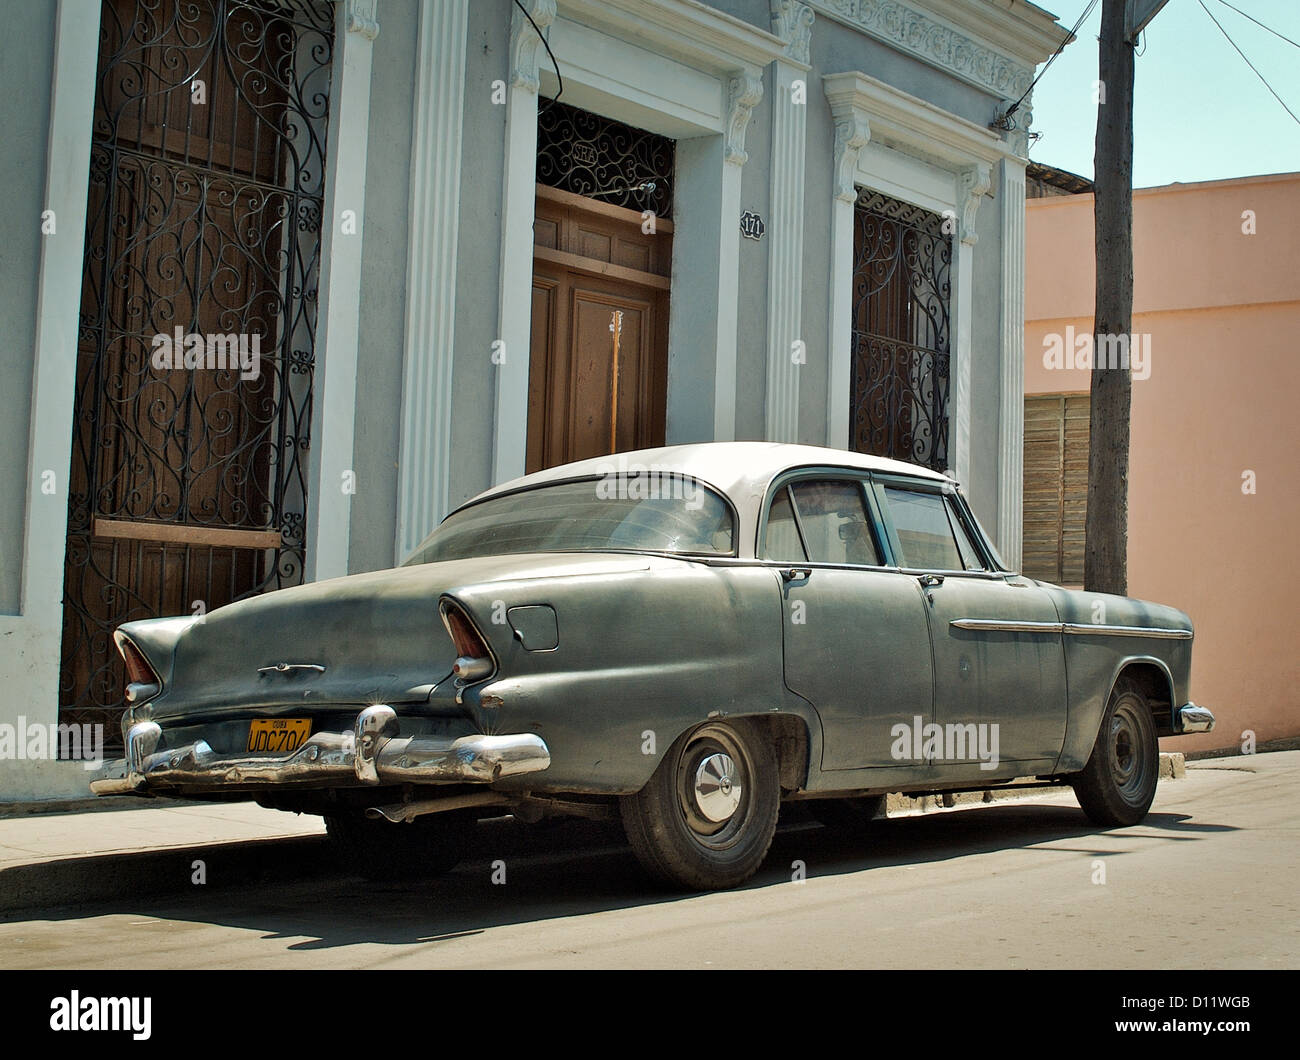 Santiago de Cuba, Cuba, Plymouth, built in 1955 Stock Photo